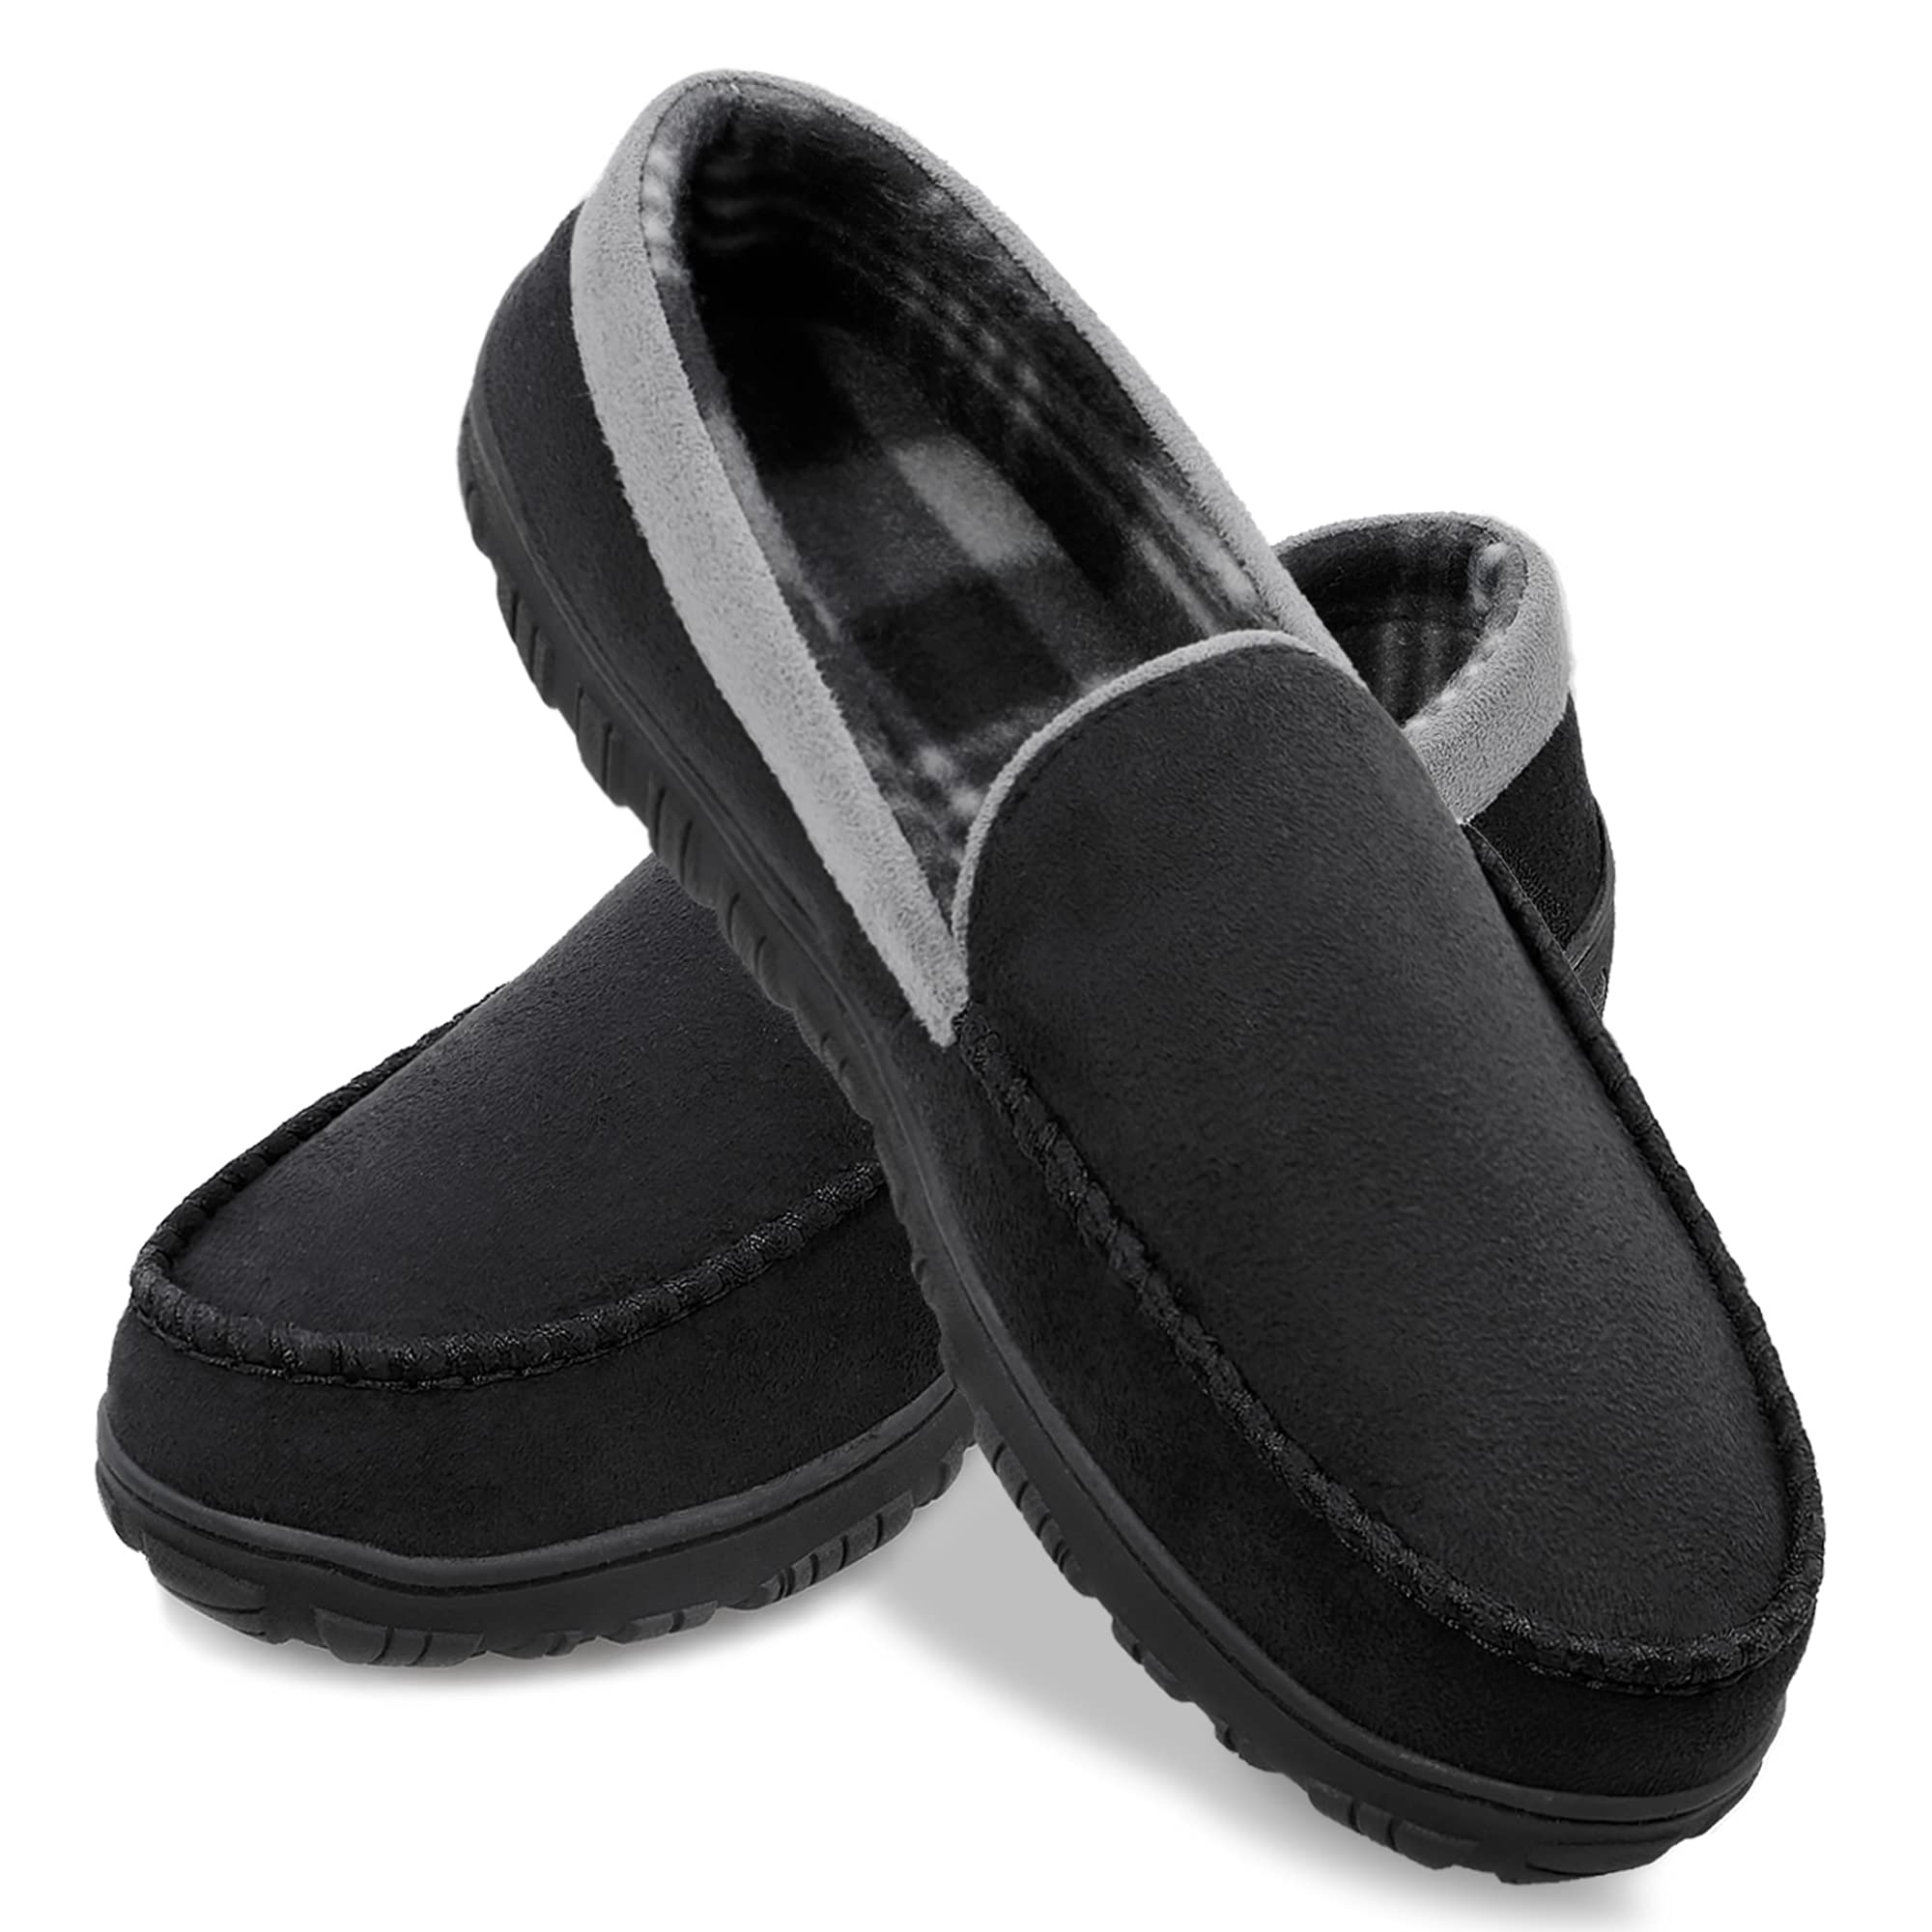 shoeslocker Men's Slippers Bedroom House Slippers Indoor Outdoor Mens Shoes Grey Size 10